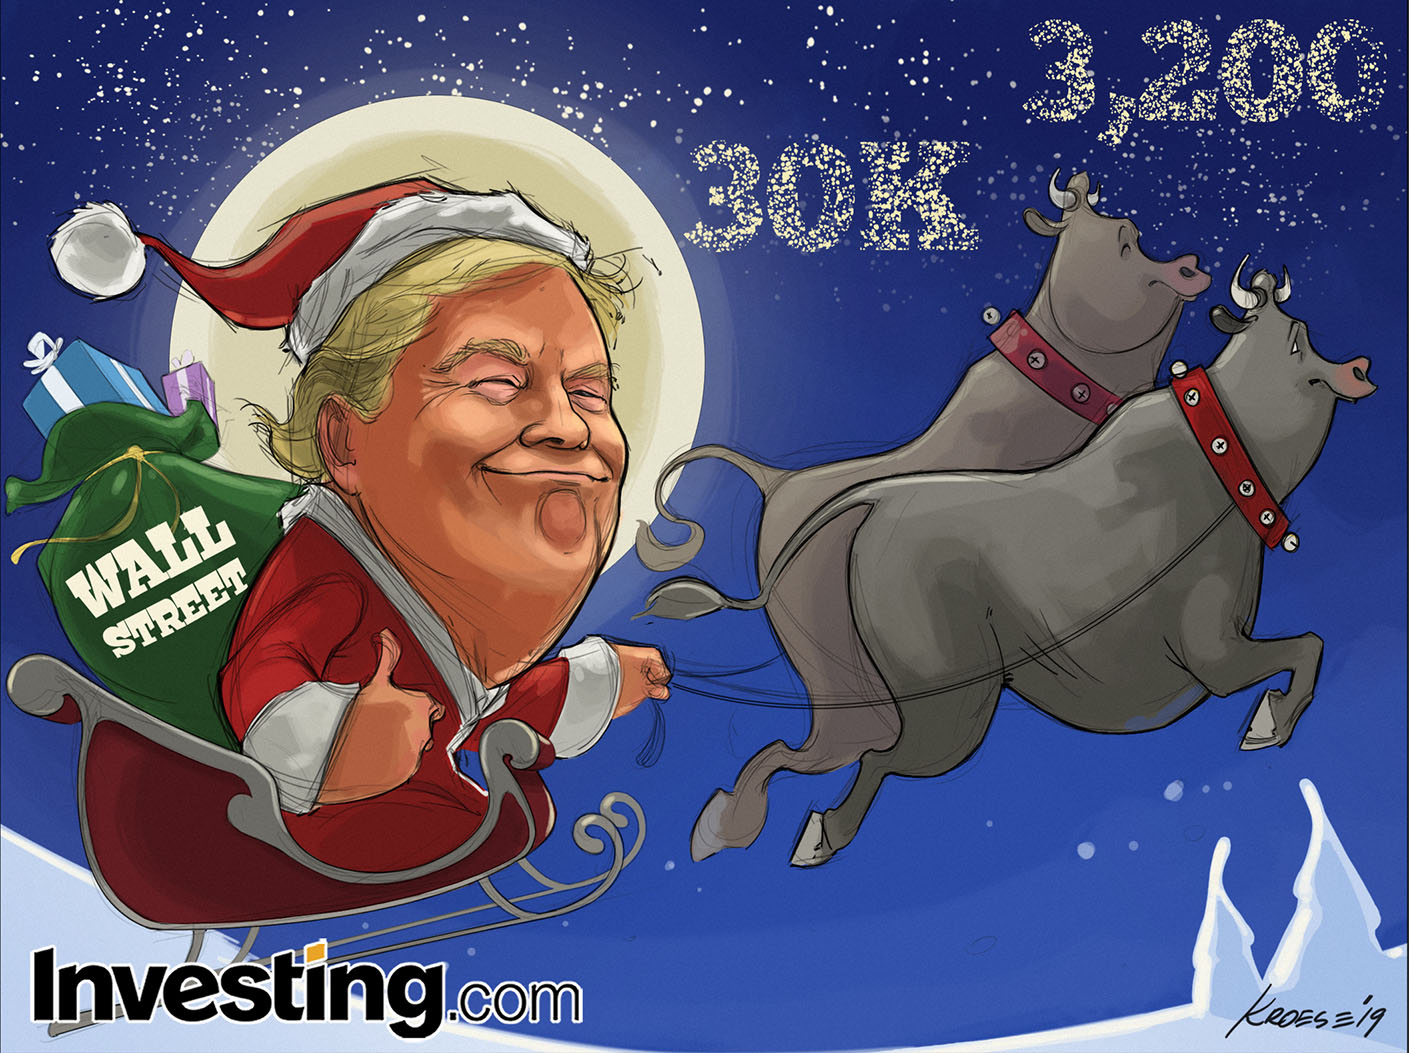 De kerstman komt naar Wall Street